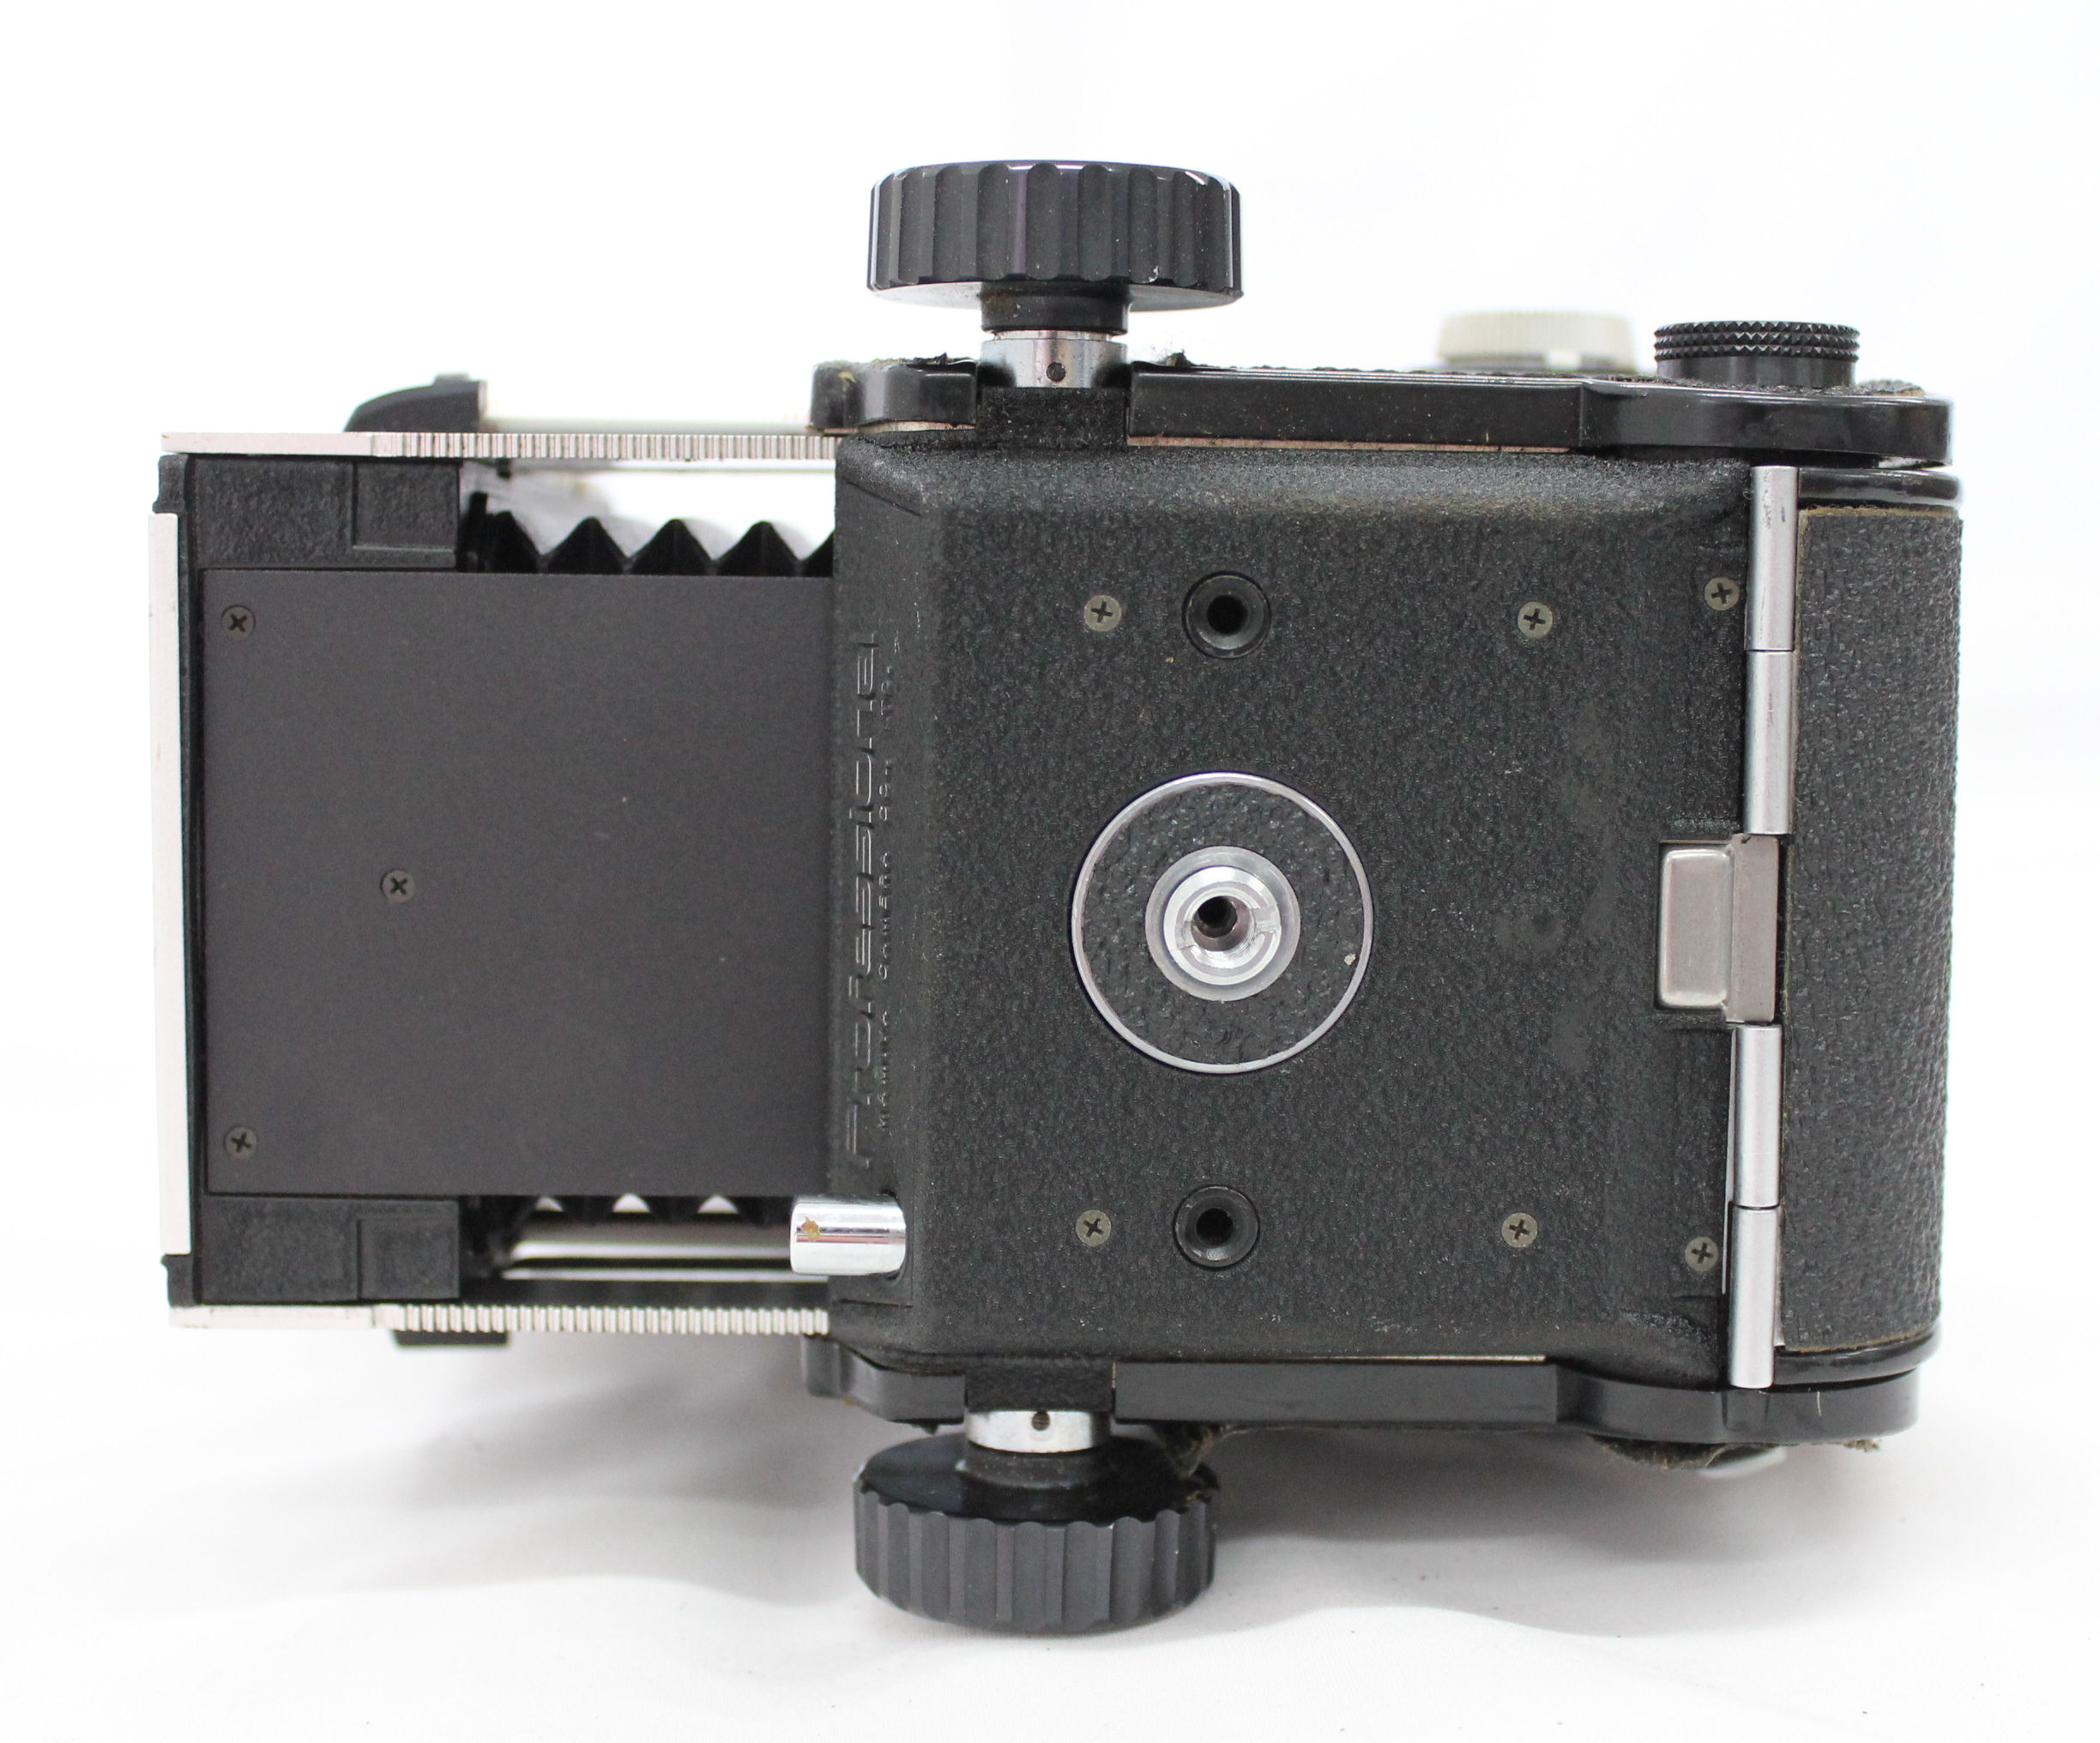  Mamiya C330 Professional Camera with Mamiya-Sekor DS 105mm F3.5 Blue Dot Lens from Japan Photo 10